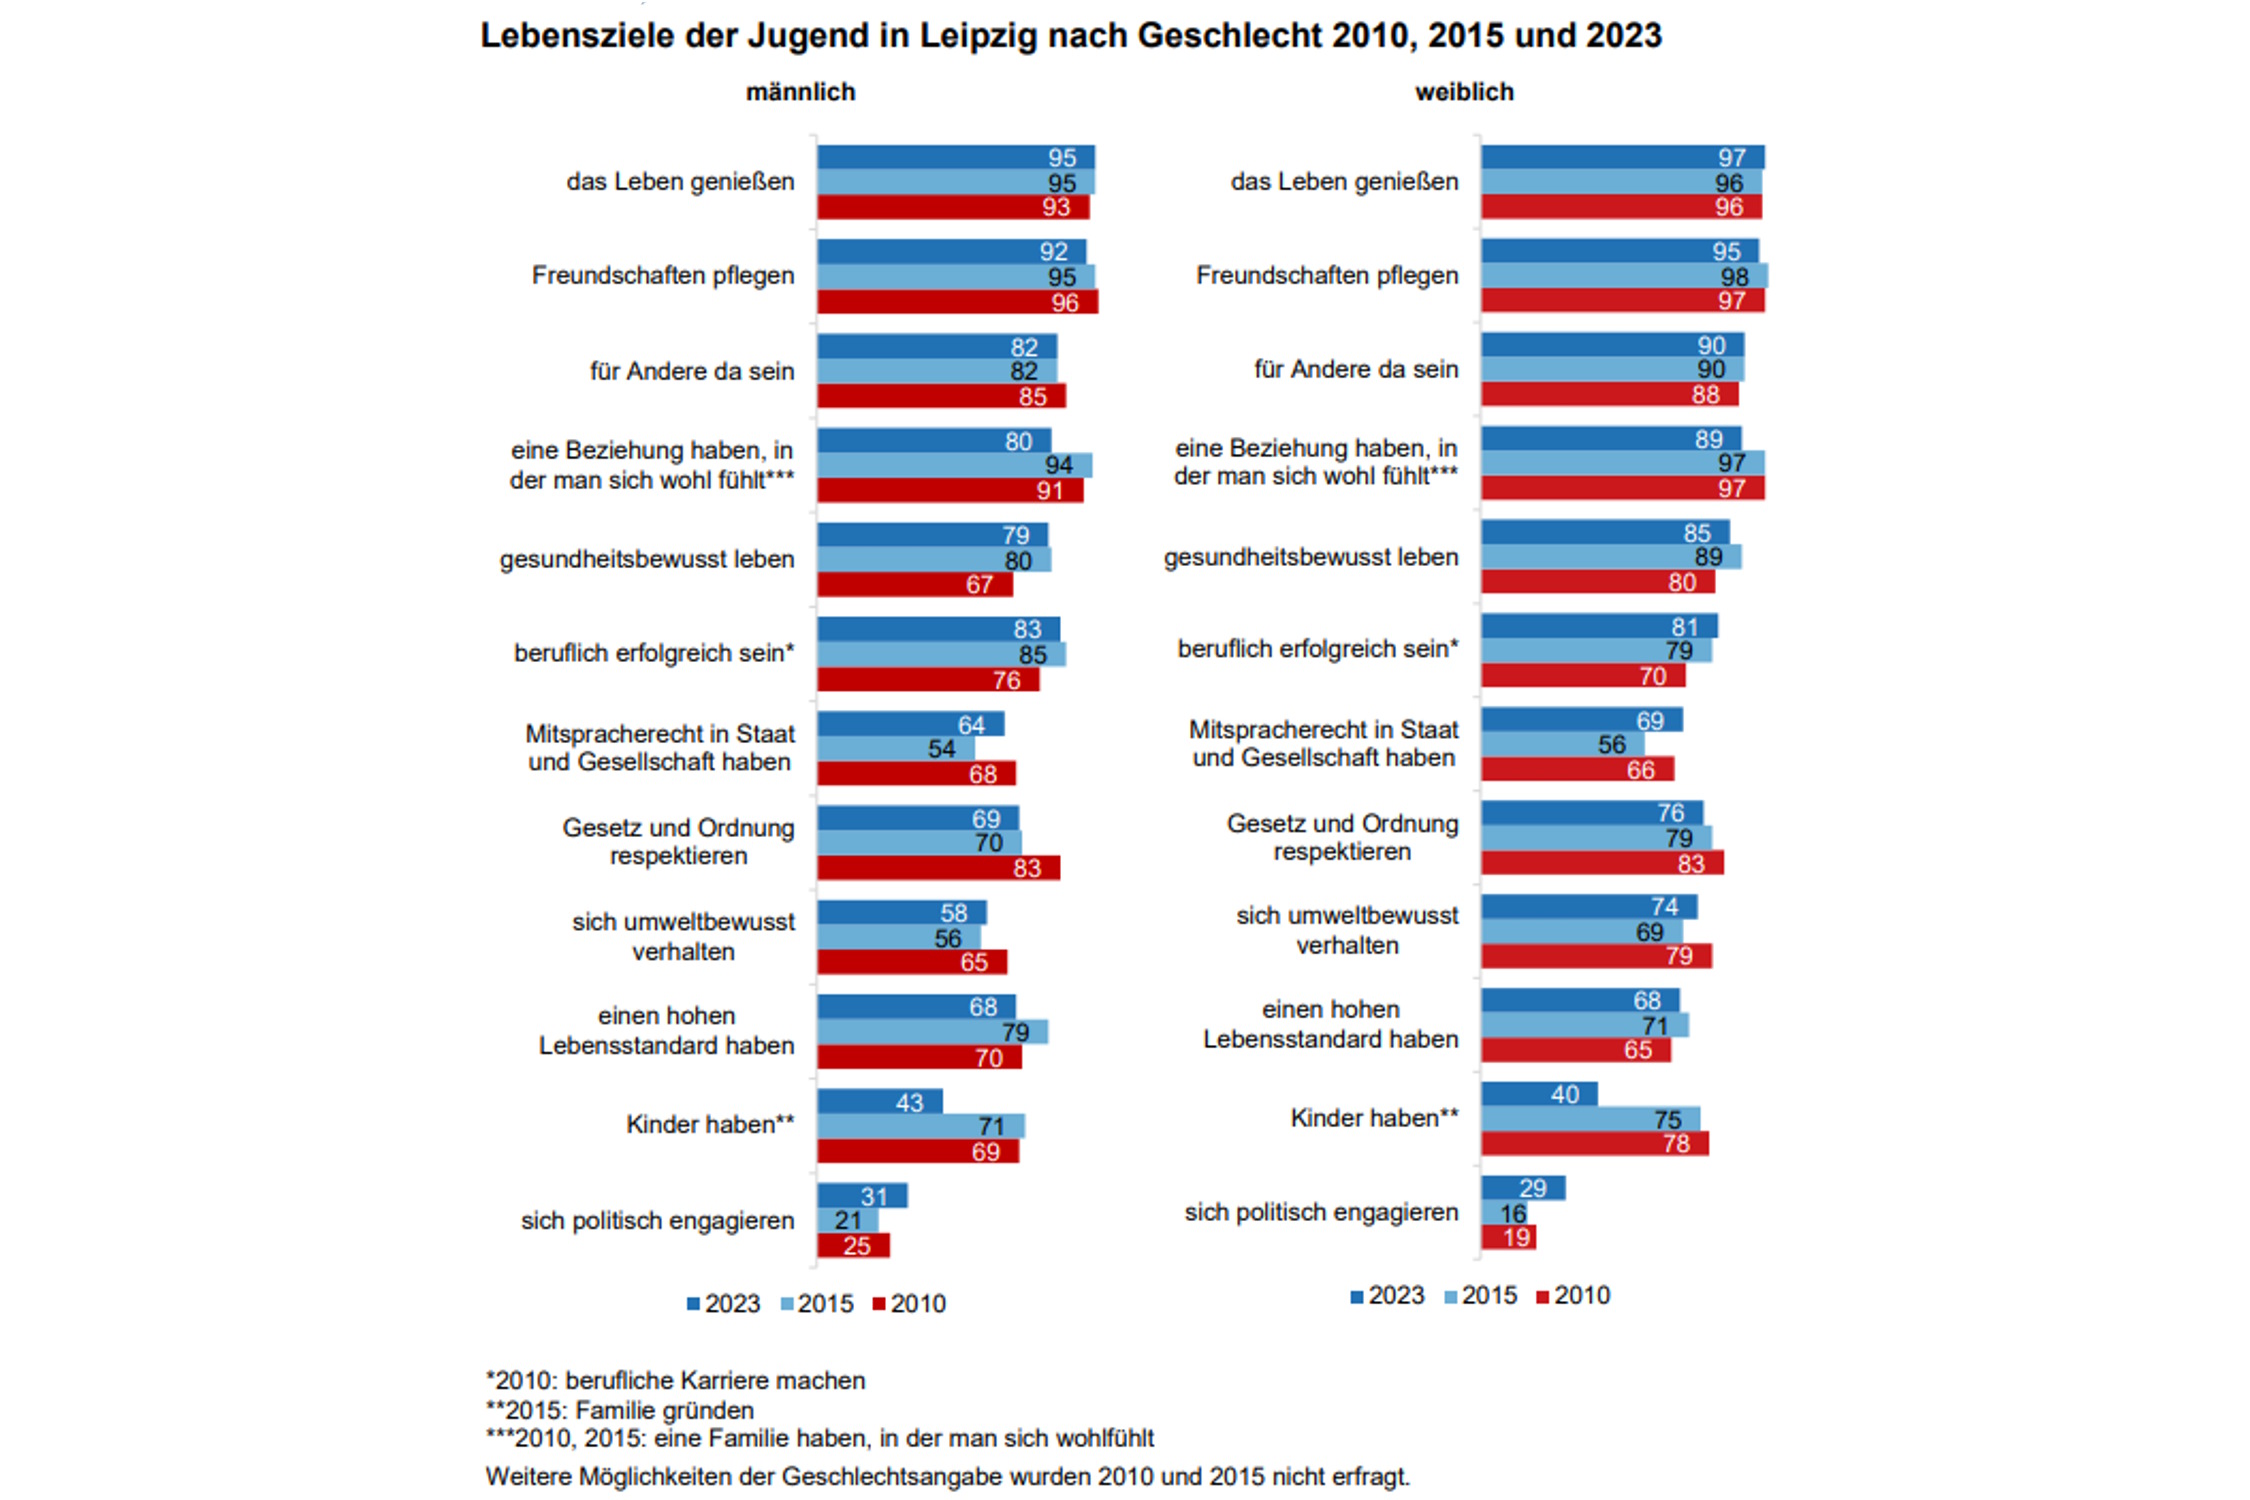 Lebensziele de befragten Jugendlichen – männlich und weiblich. Grafik: Stadt Leipzig, Jugend in Leipzig 2023